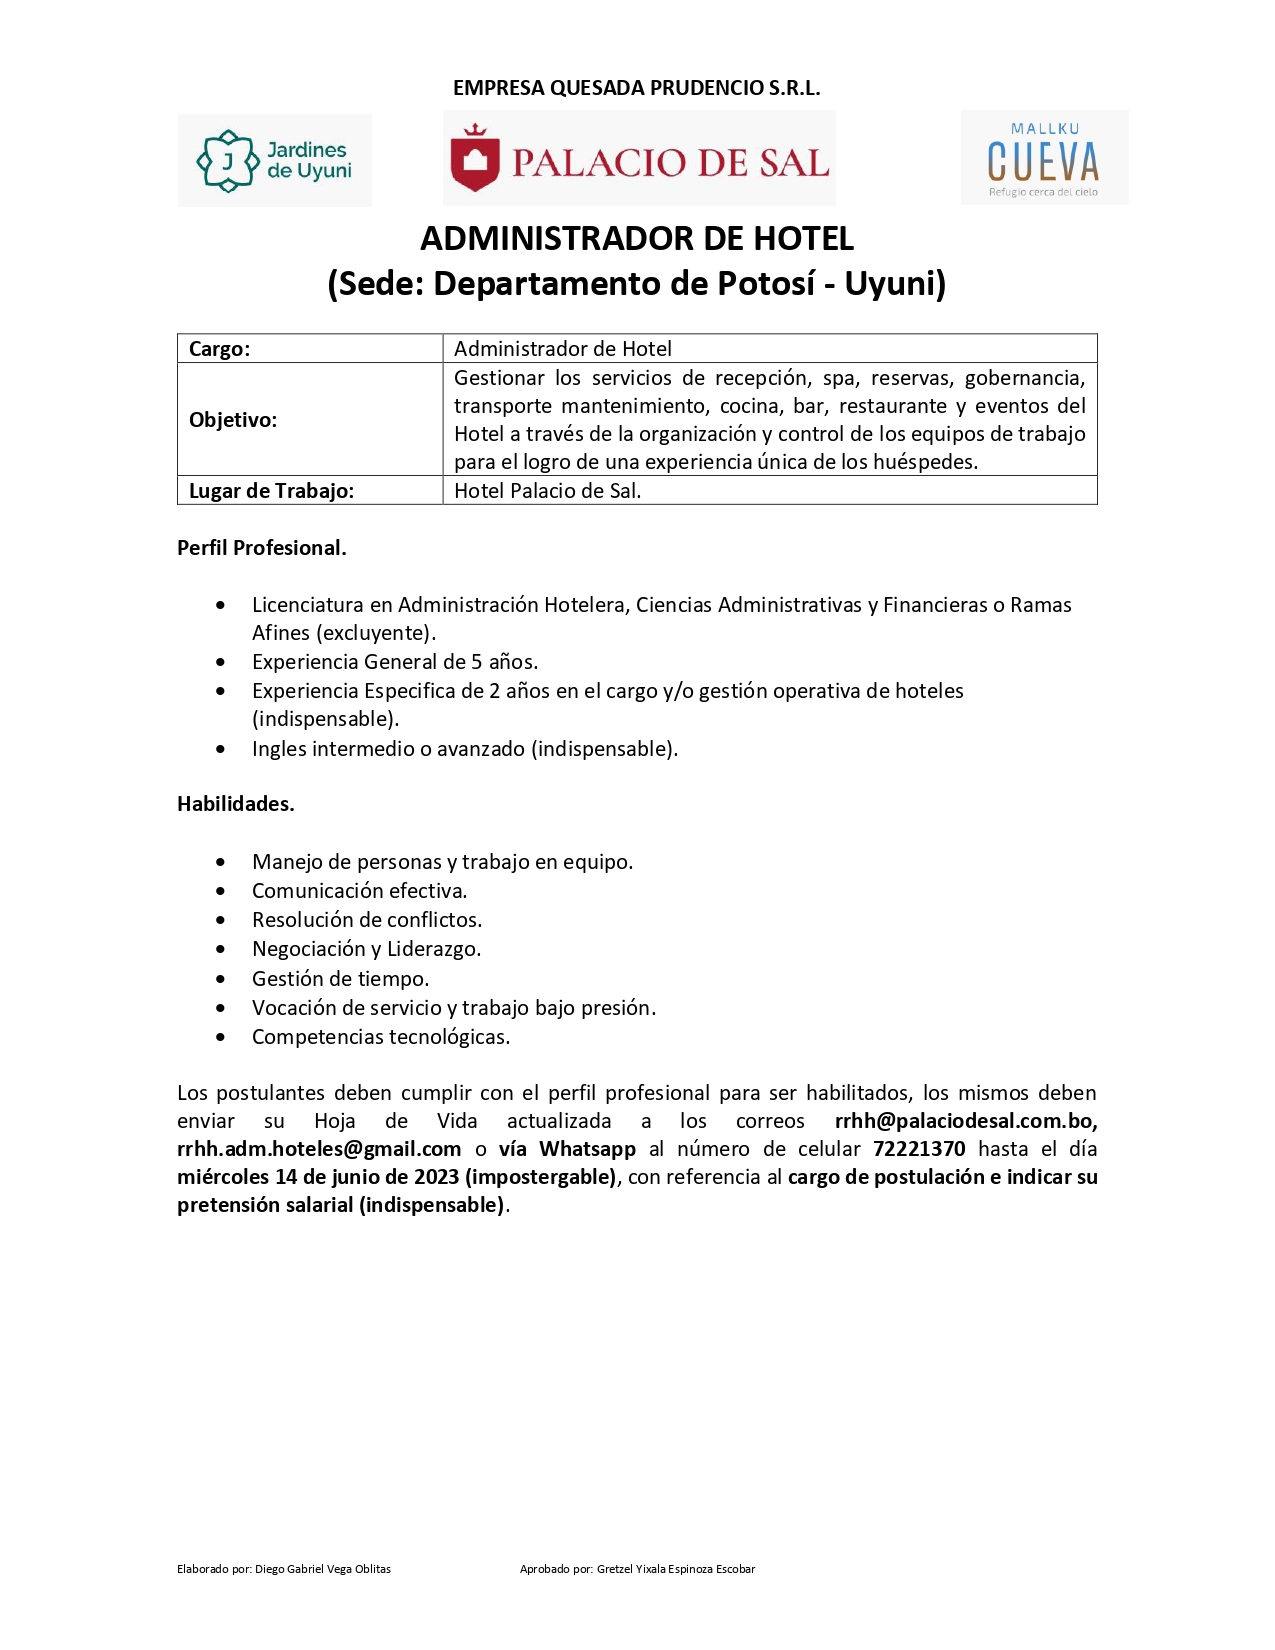 Hotel Palacio de Sal - Convocatoria (Incluye vivienda y alimentación)